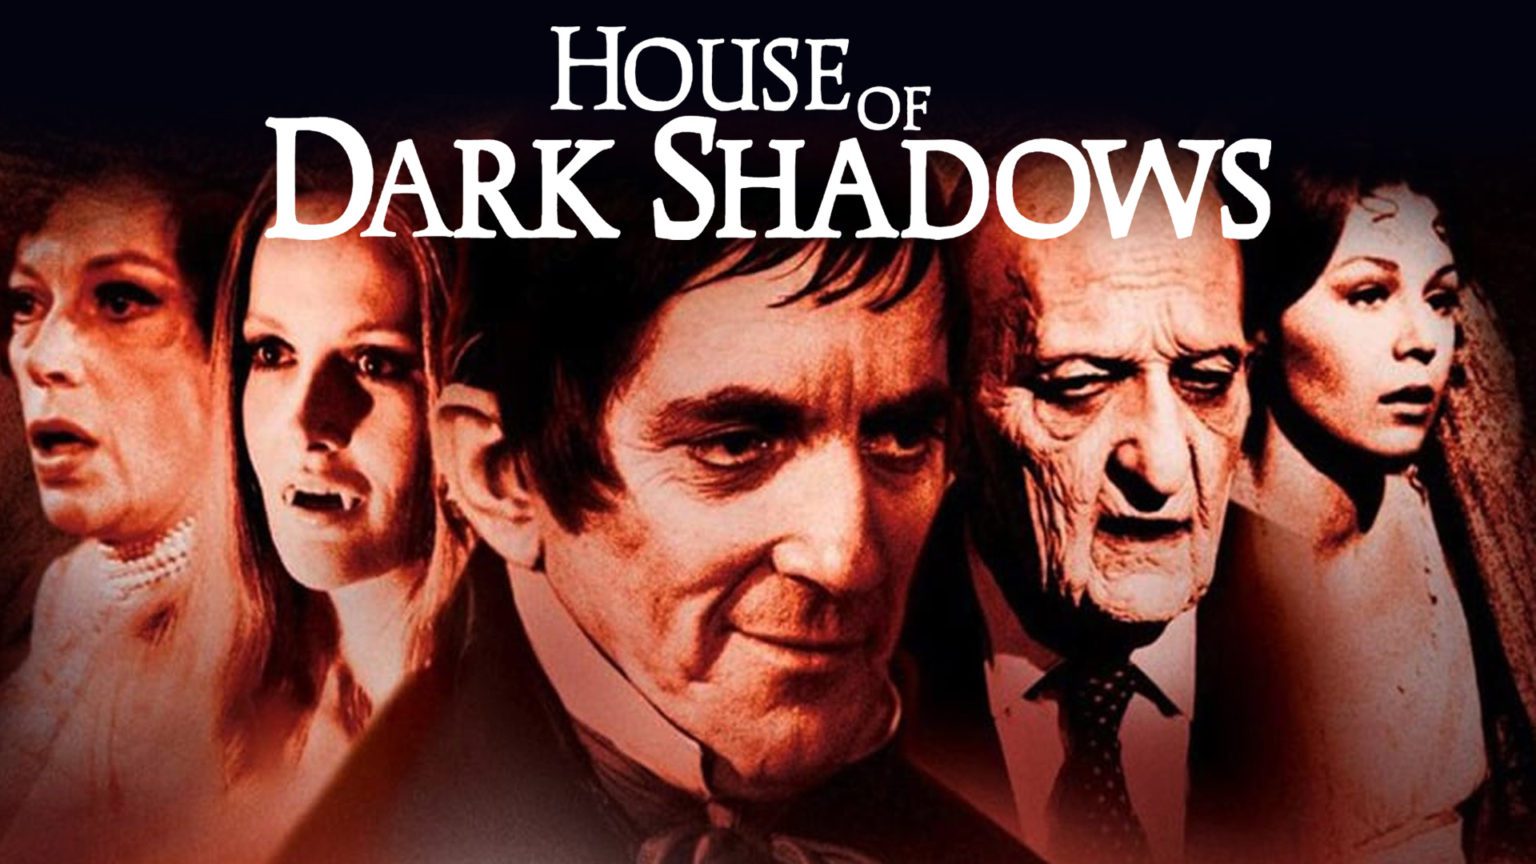 Still Casting Shadows... The Magic Of 'Dark Shadows' (1966) Still ...